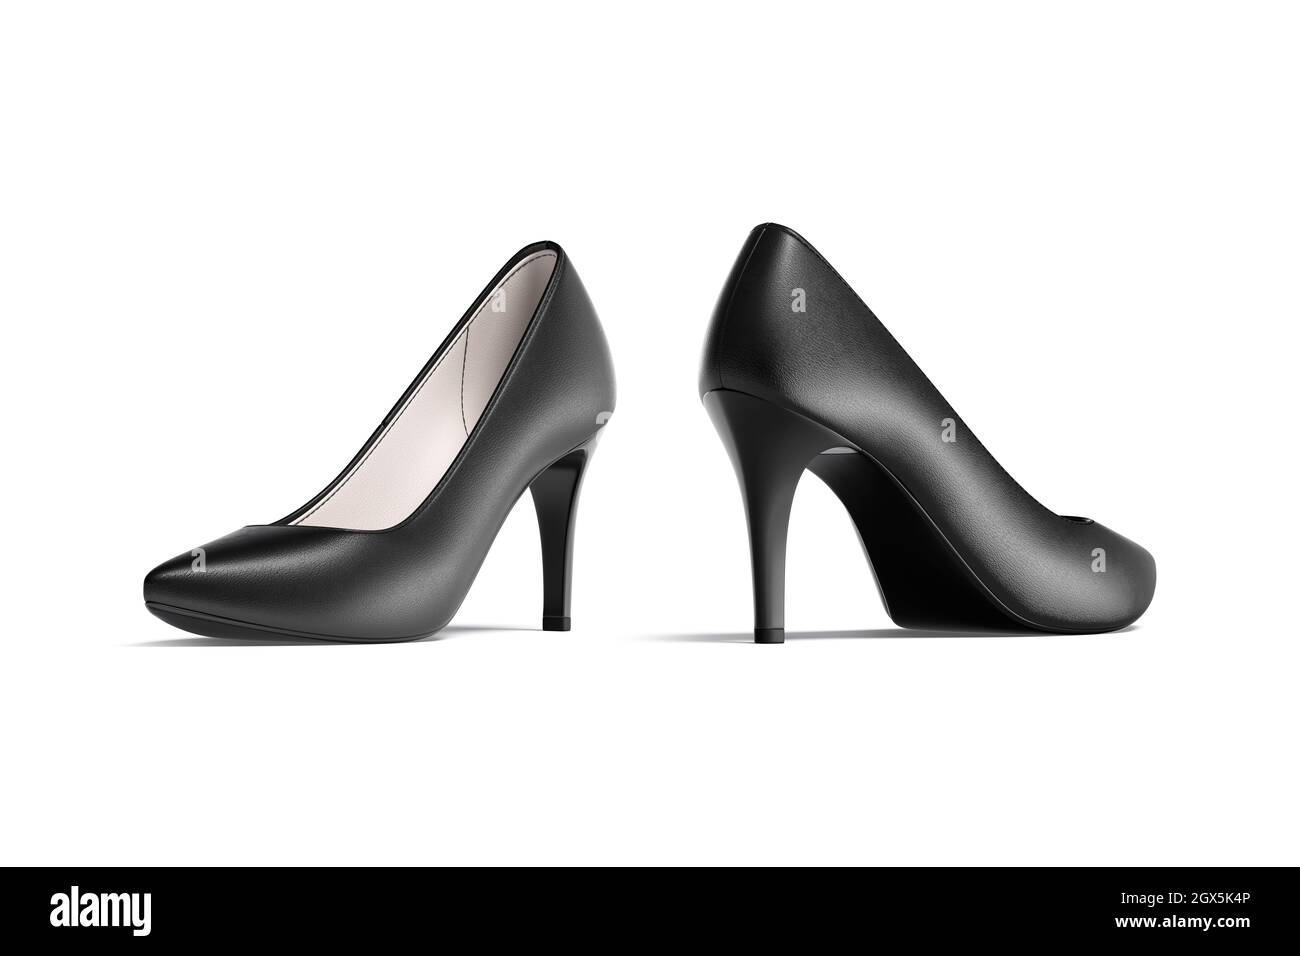 Negro en blanco zapatos de tacón alto mockup, vista de mitad de parte posterior lateral, 3D renderizado. Equipación vacía para mujer para un look de vestir informal, aislada. leath Fotografía